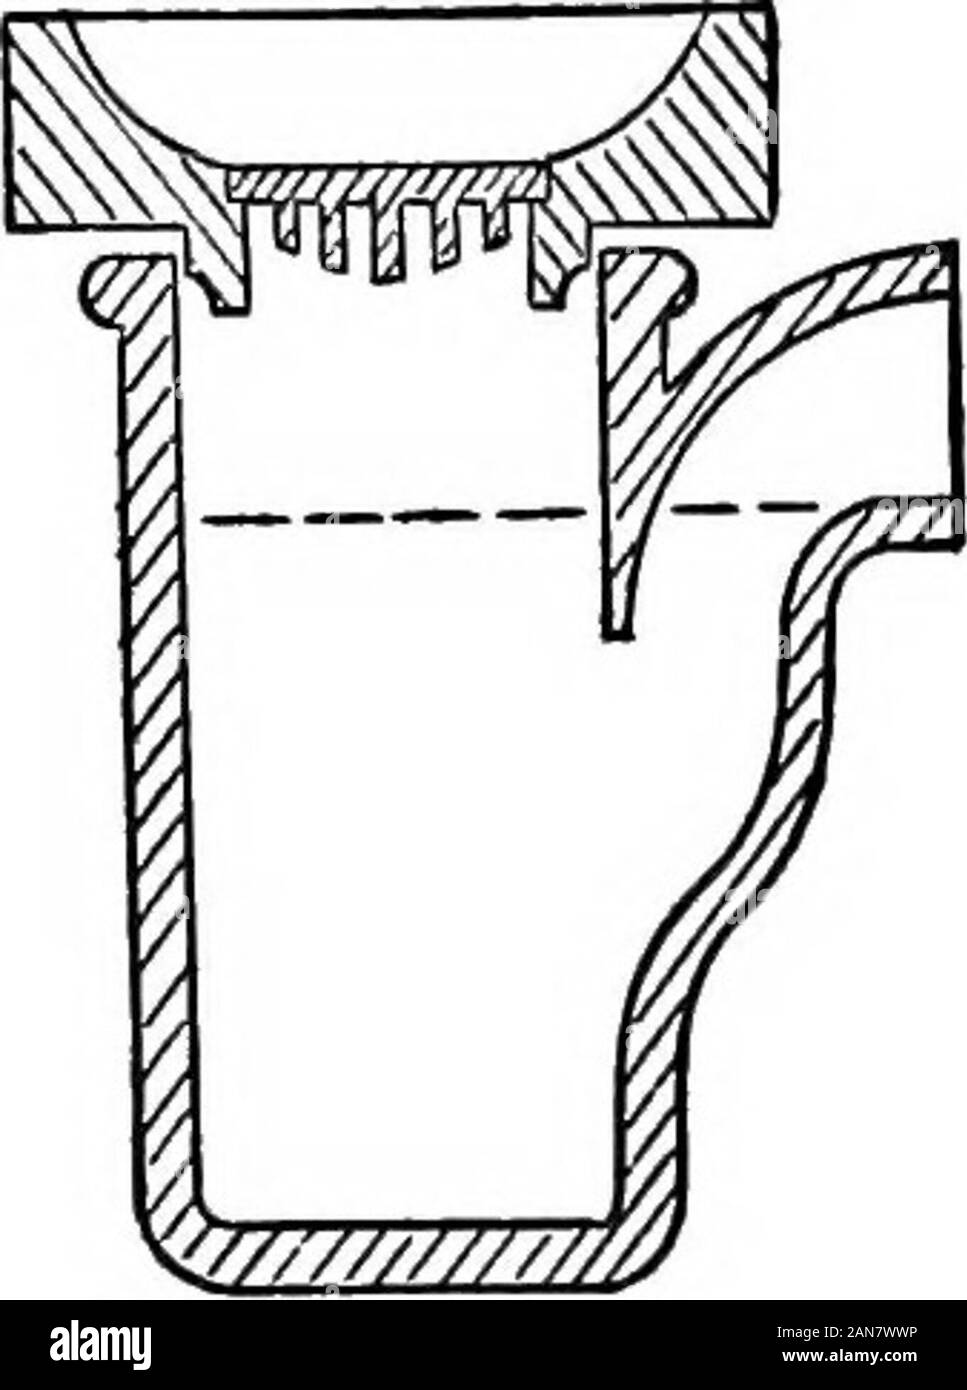 Praktische Hygiene; ein Handbuch für sanitäre Inspektoren und andere; mit apxon Sanitär Recht, von Herbert Manley. notwendigerweise auf den Boden fallen, um den Plan zu verabschieden ist tolay den Boden mit einem Gefälle zu einem Kanal führt zu einer Seite gully. Eine gnlly-Trap ist eine hervorragende Sache in seinen richtigen Platz, aber itsplace ist nicht im Haus. 90 PRAKTISCHE HYGIENE. Die ordentliche Form der Gully-Trap (Abb. 40) ist sehr einfach andinexpensive, und es nimmt den Zweck gut, soweit die yarddrainage und Regen - Druckleitung betroffen ist. Es ist essentialthat regelmäßig gereinigt werden sollte, aber dieses Ap Stockfoto